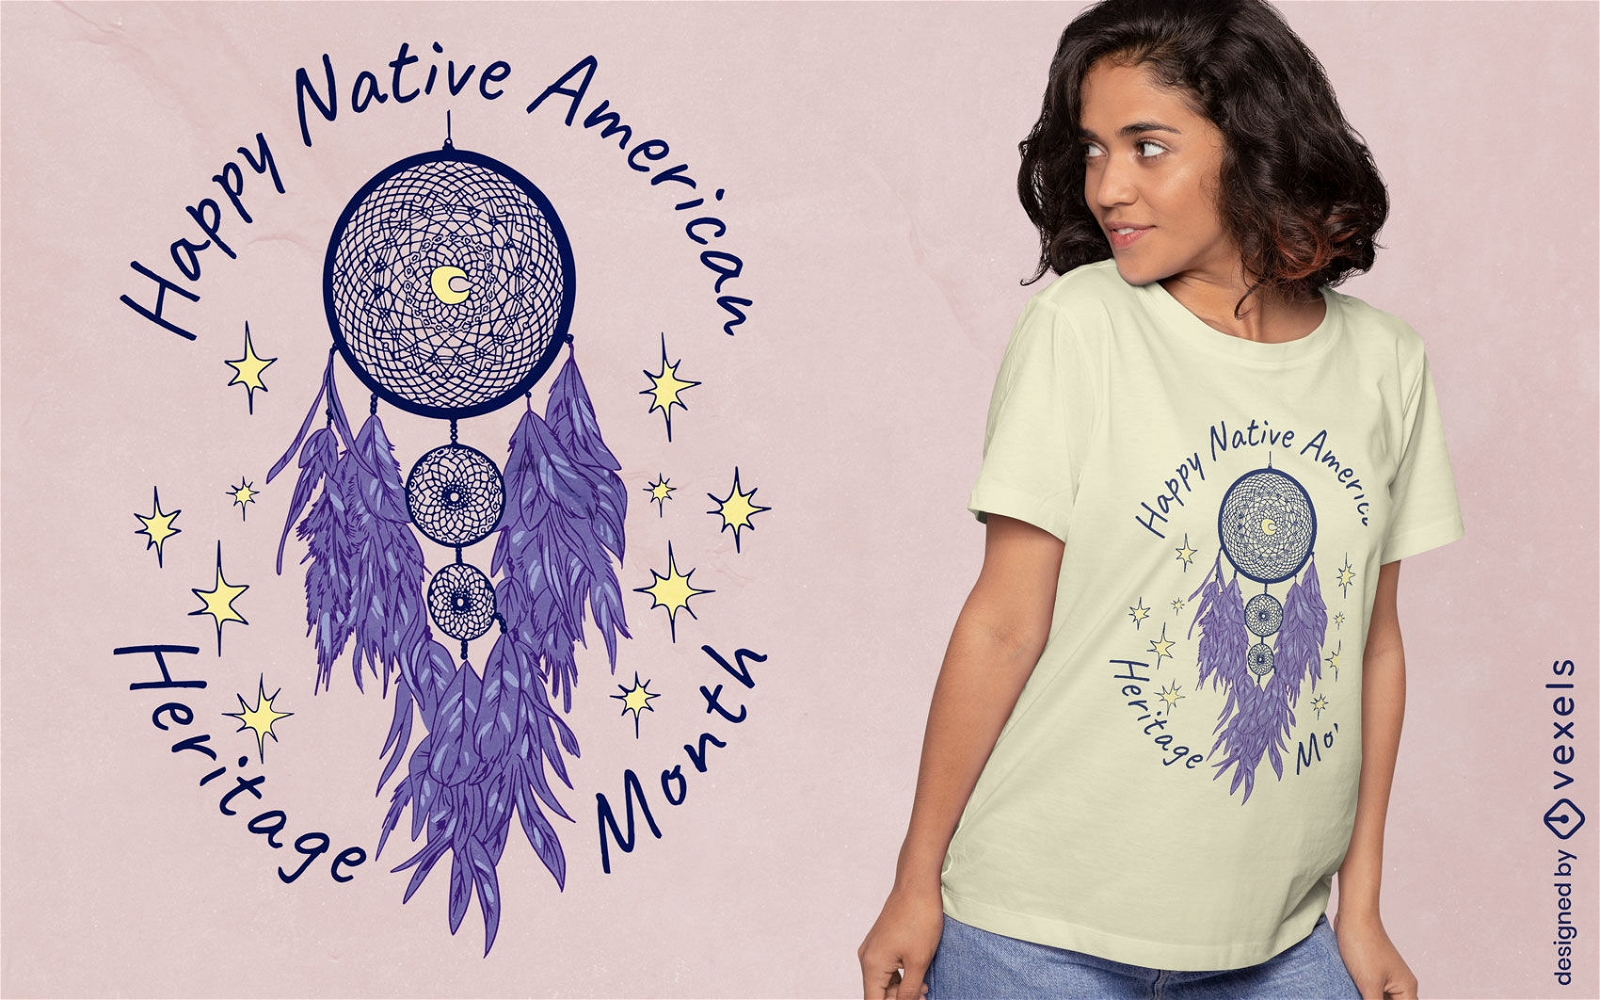 Traumf?nger-T-Shirt-Design der amerikanischen Ureinwohner